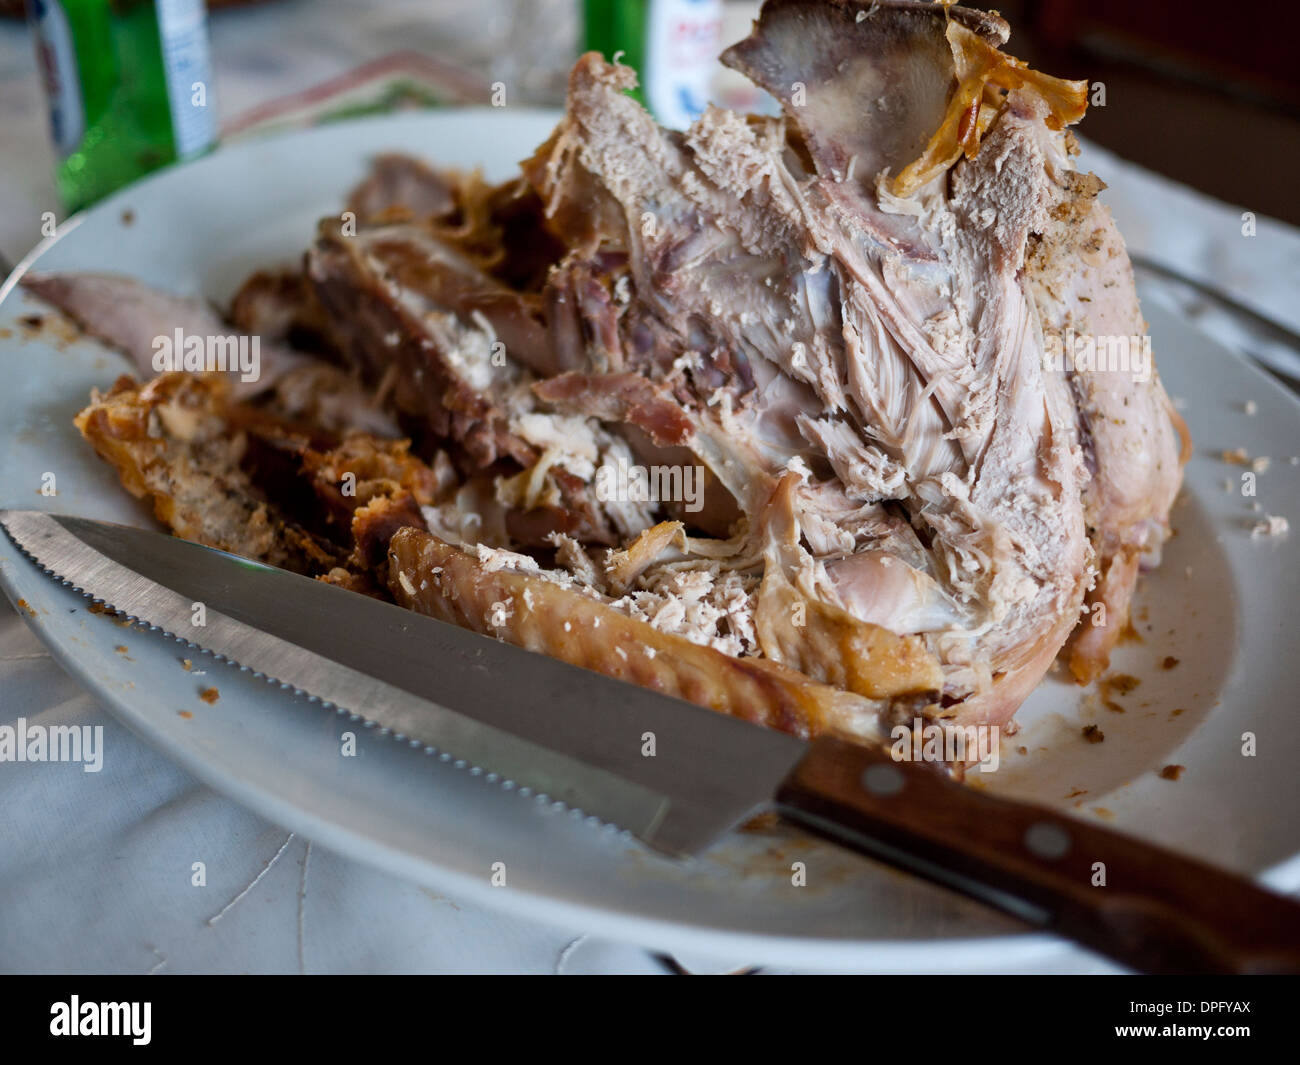 Turkey Roast leftovers on oval plate. Stock Photo